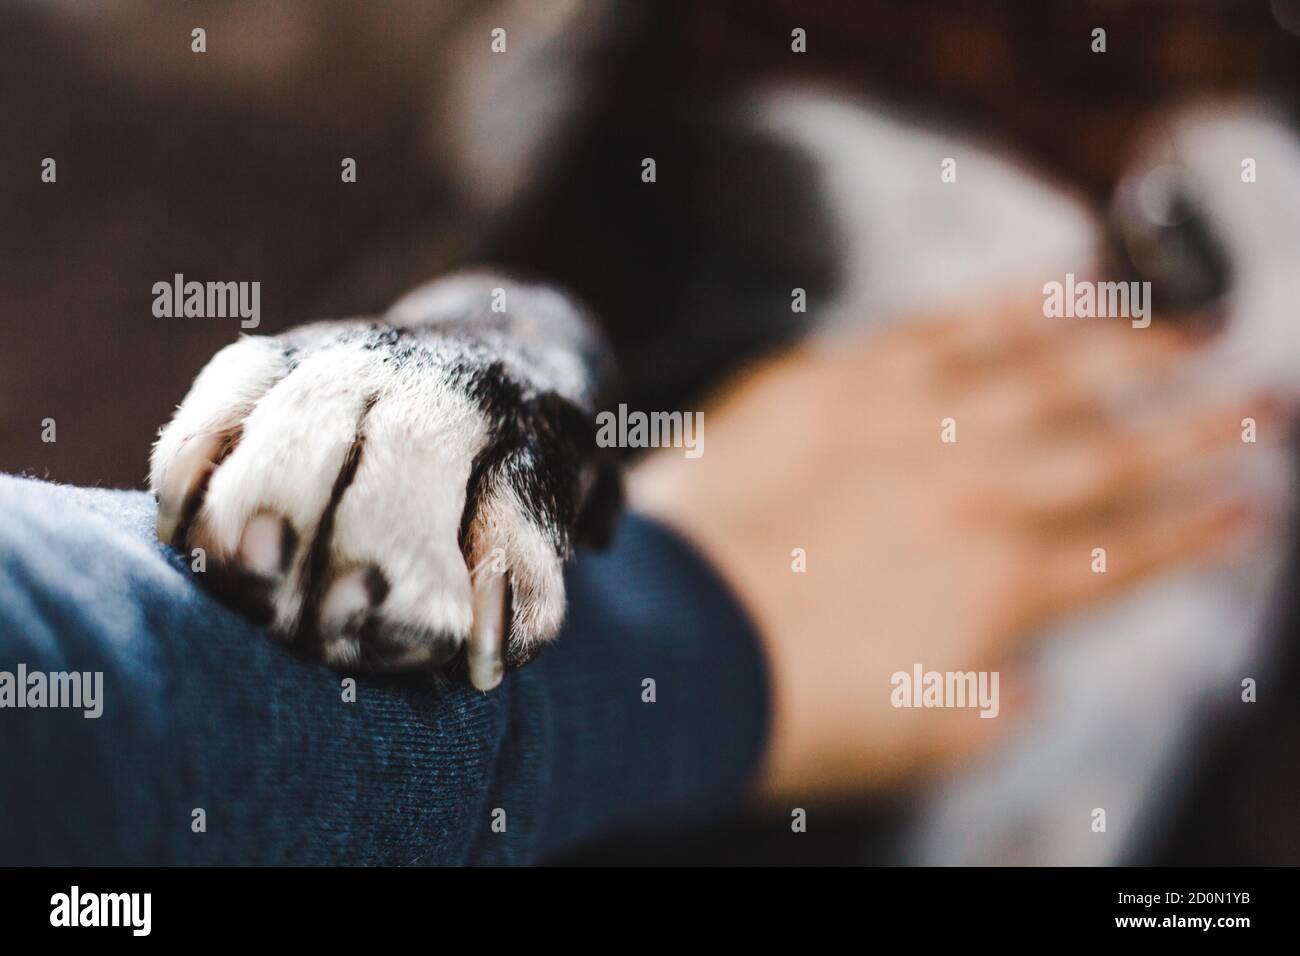 Caring Staffordshire bull terrier bully razza cane amorevolmente posti suo zampa bianca sul braccio dell'uomo mentre riceve uno sfregamento della pancia Foto Stock